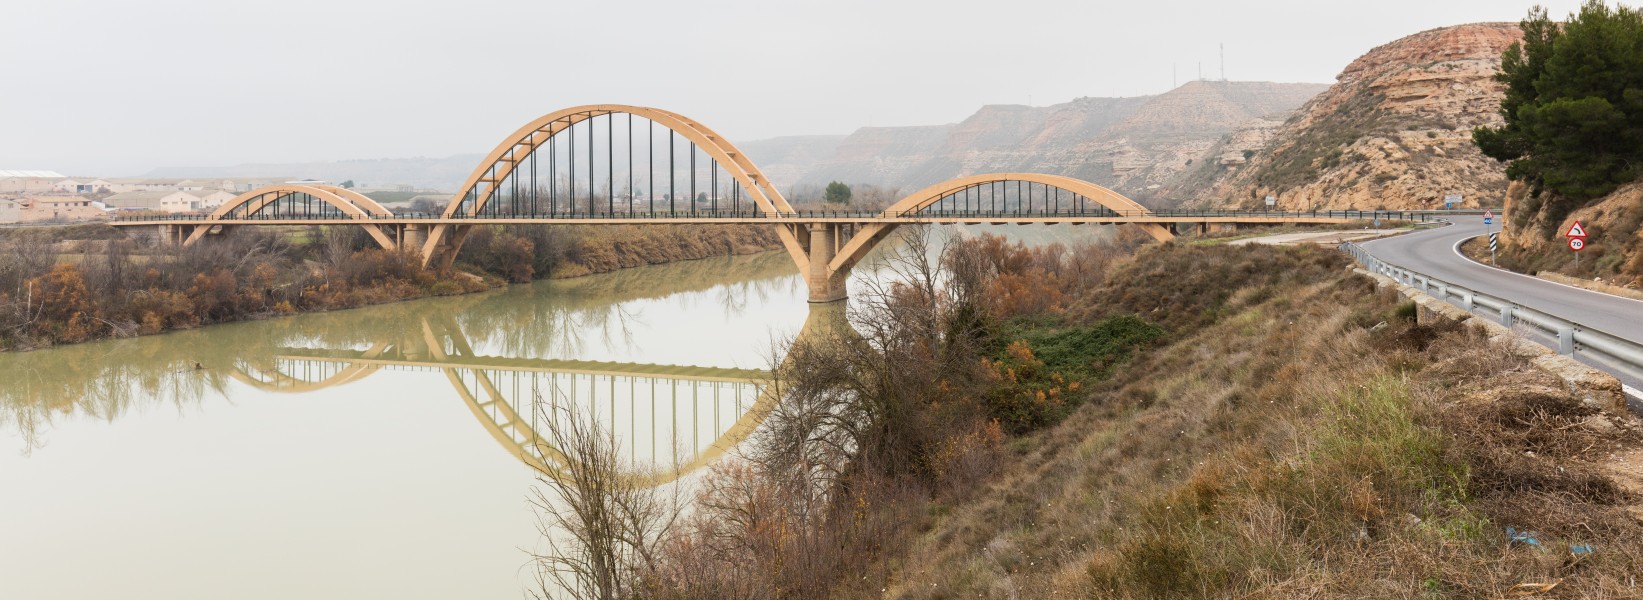 Puente sobre el Ebro, Sástago, Zaragoza, España, 2015-12-23, DD 41